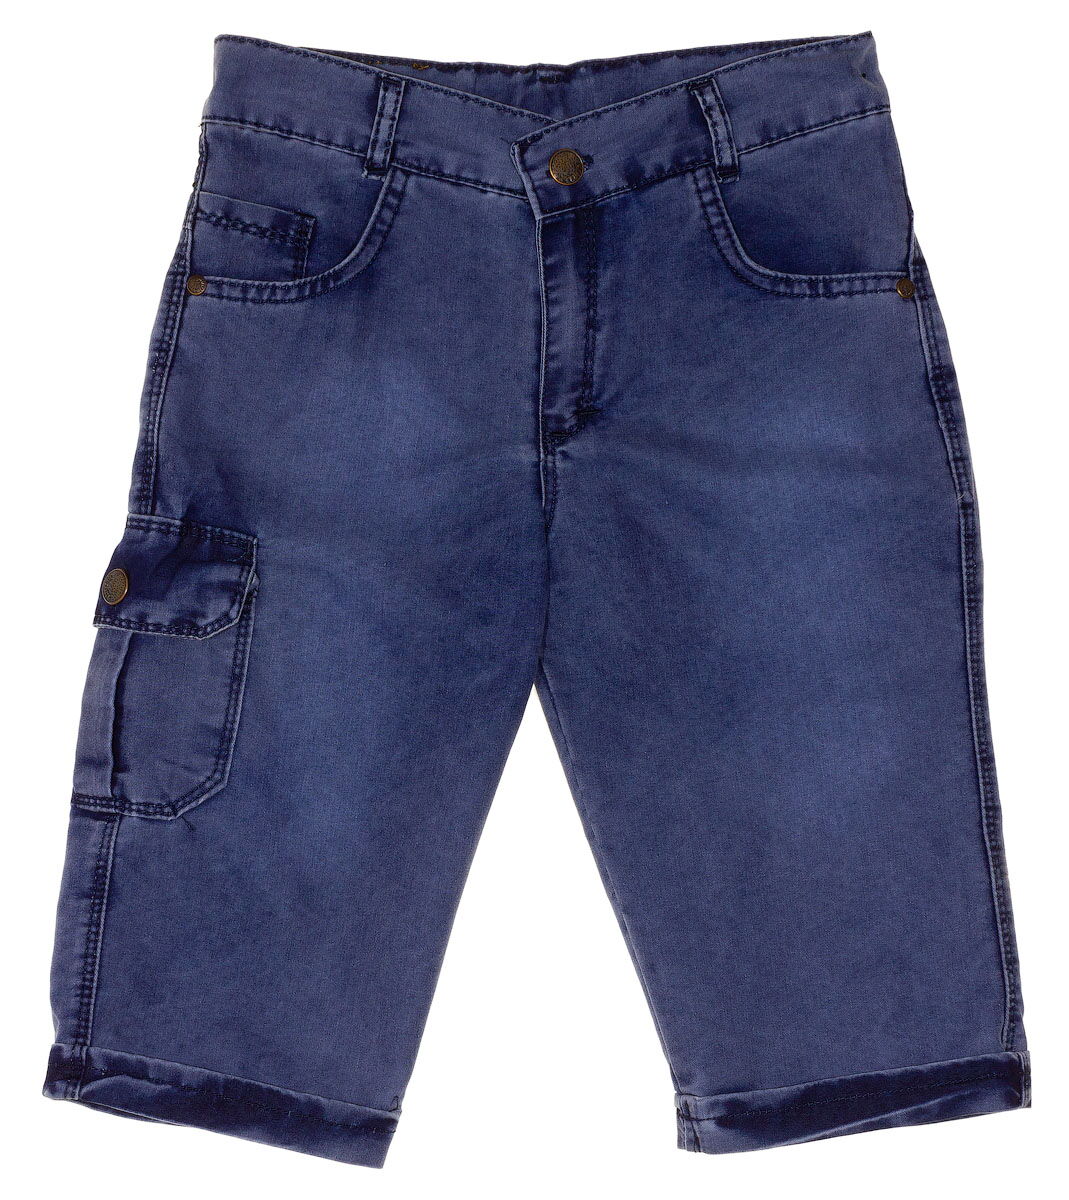 Джинсовые шорты для мальчика 6038 синие - цена